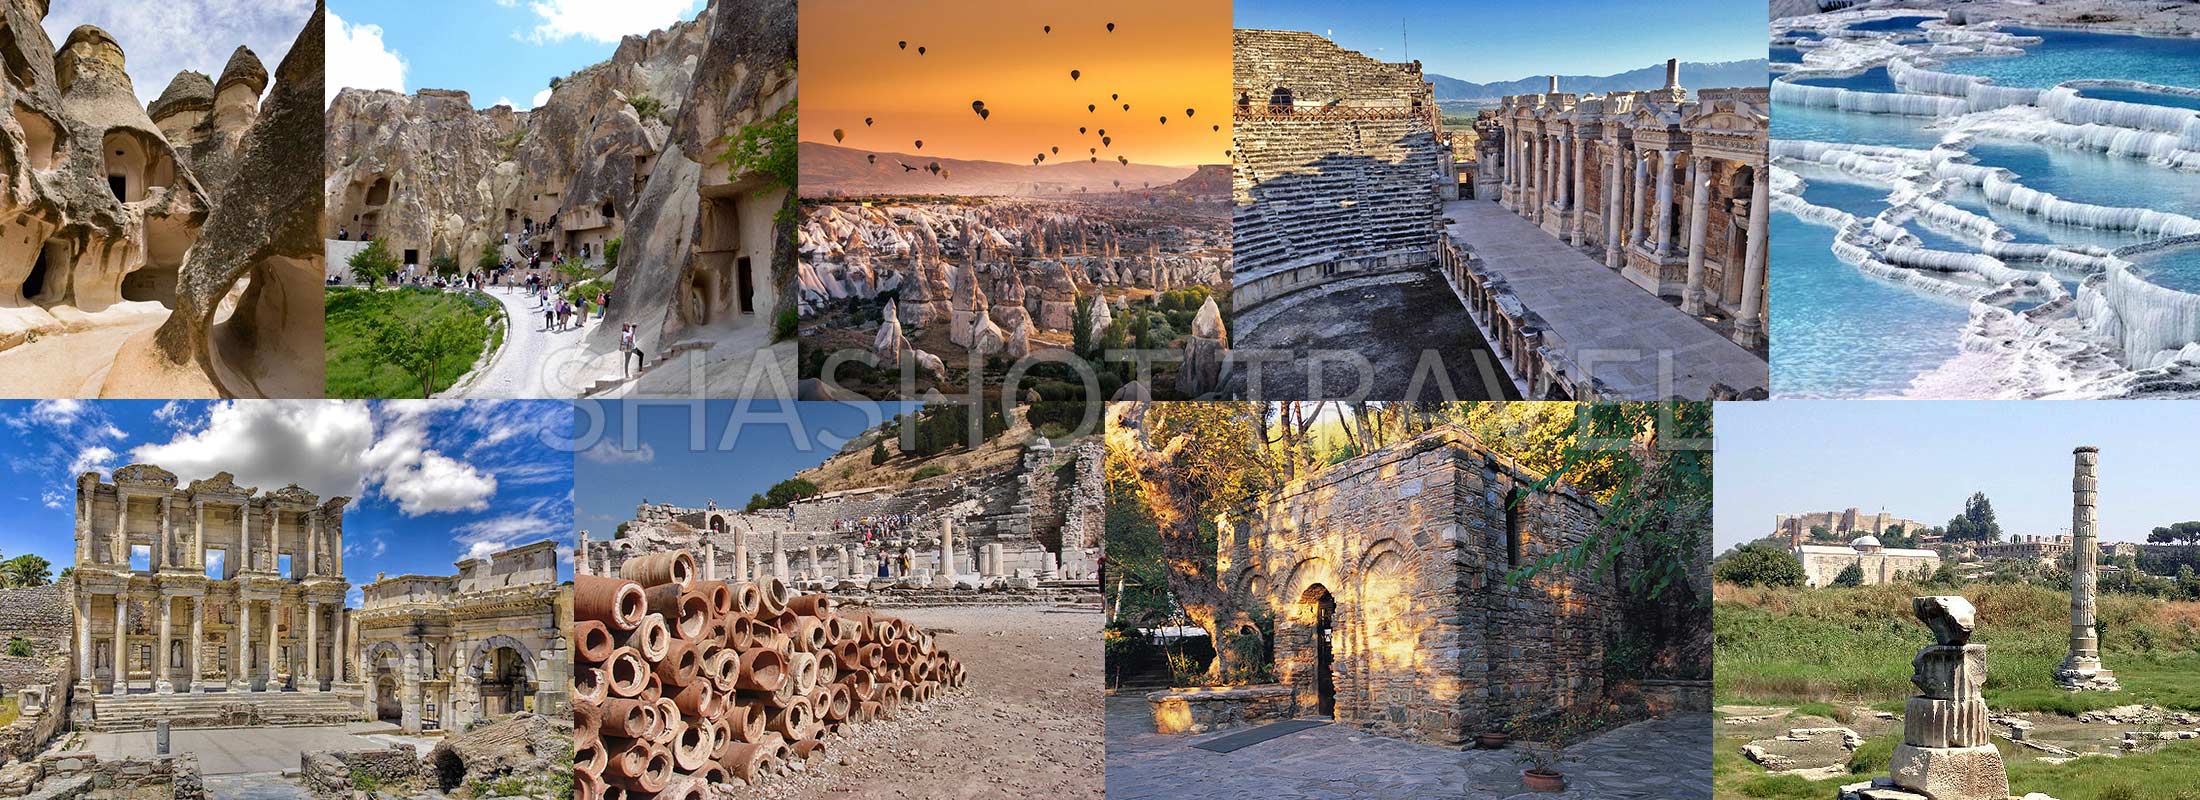 turkey-package-tours-4-days-cappadocia-pamukkale-hierapolis-ephesus-virgin-mary-house-by-flight